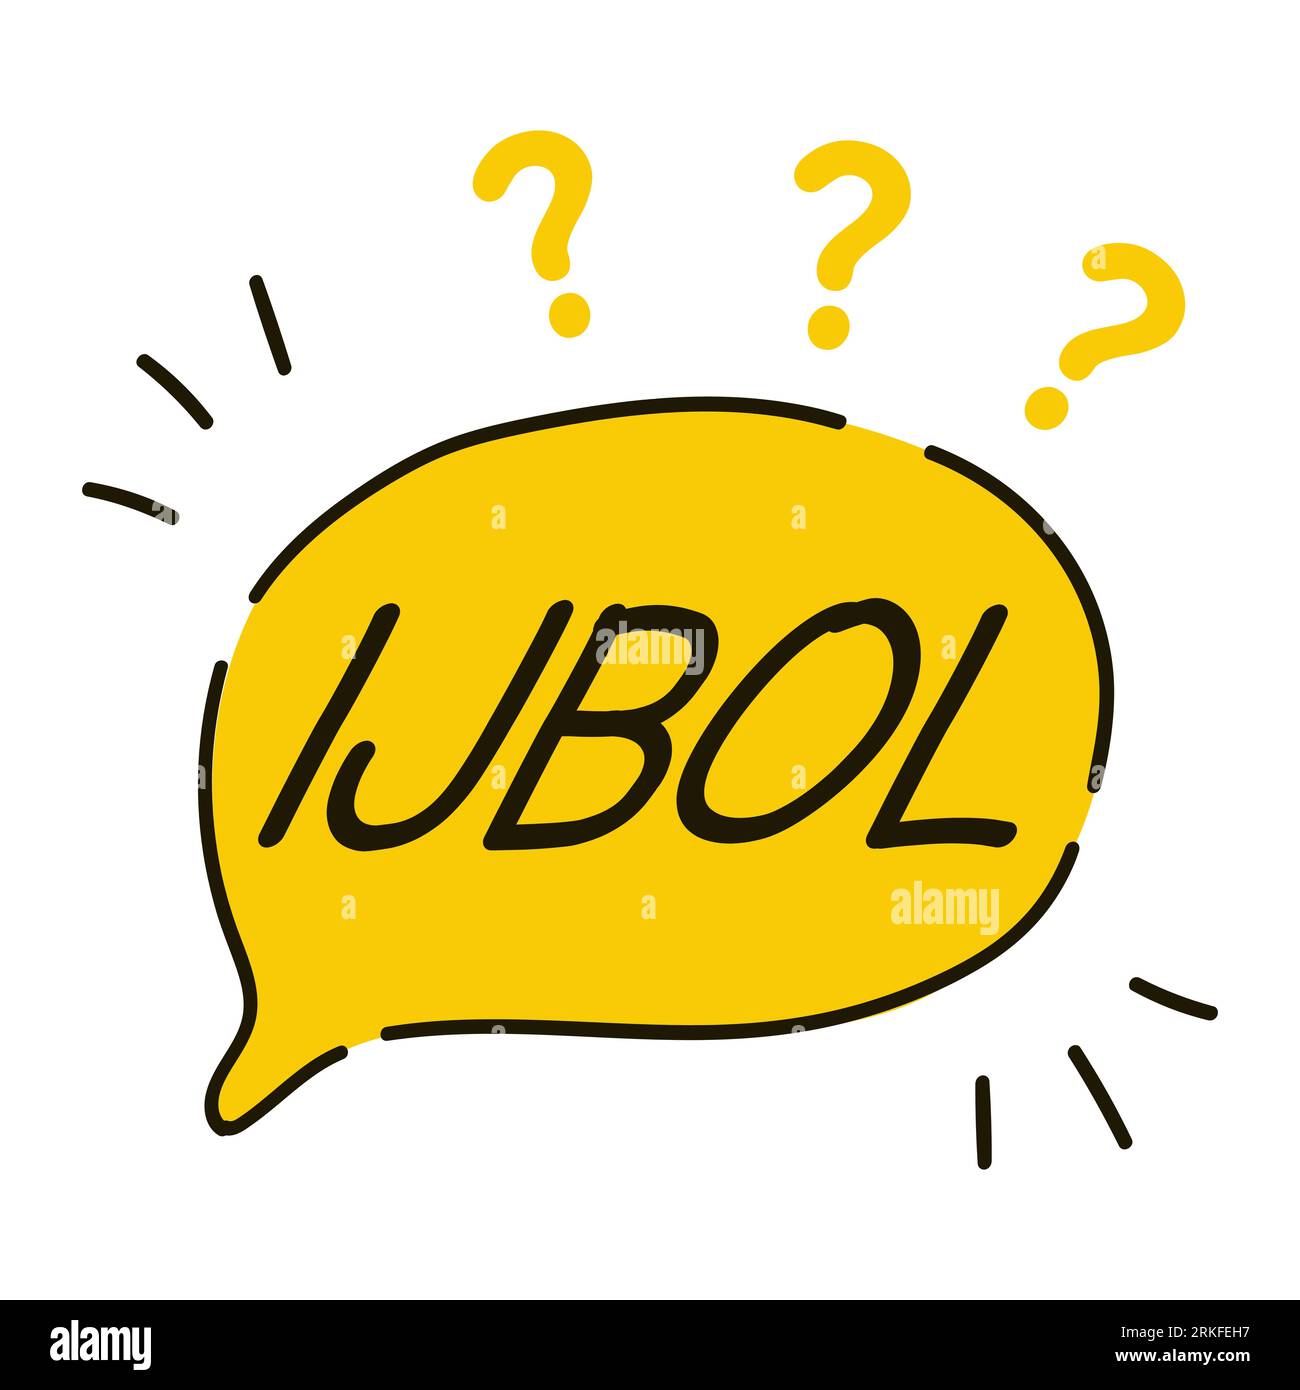 Was ist IJBOL-Frage, Ex-Lol-Satz. Gen-Z-Version von LOL, steht für „Ich bin gerade ausgeplatzt“ Lachen, Vektor-gelbes Sprechblasensymbol, Abzeichen-Illustration Stock Vektor